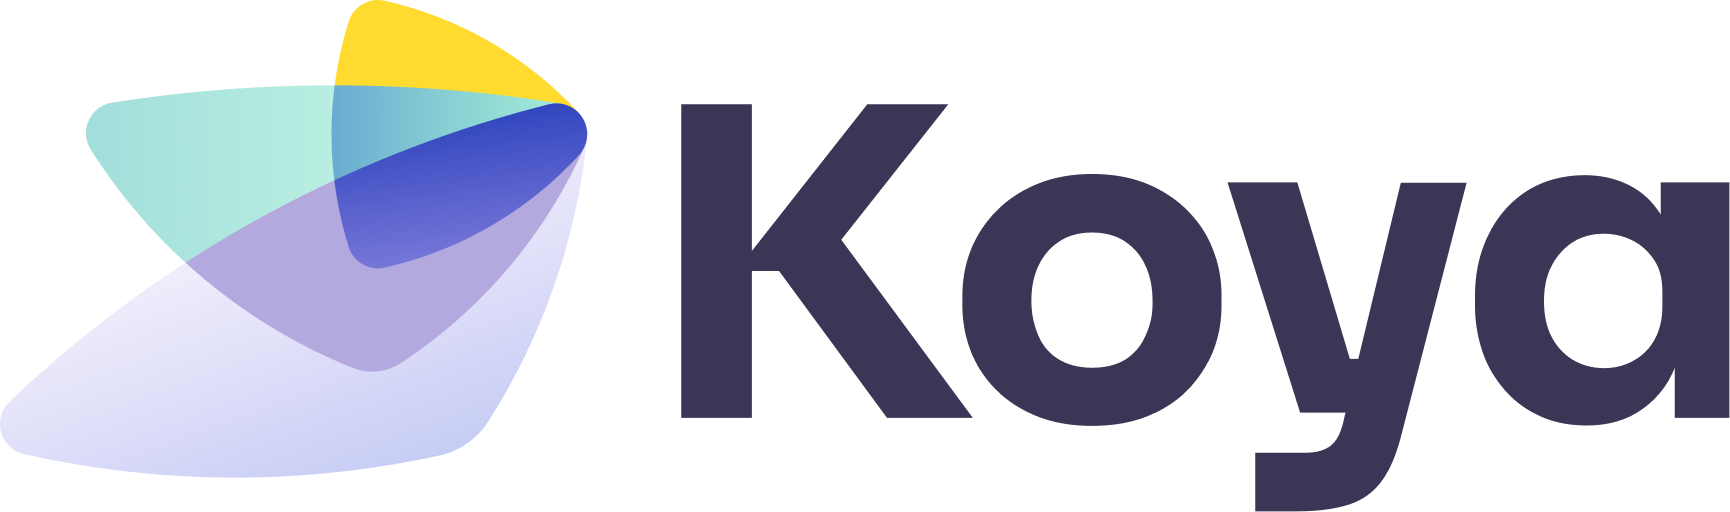 Koya Inc